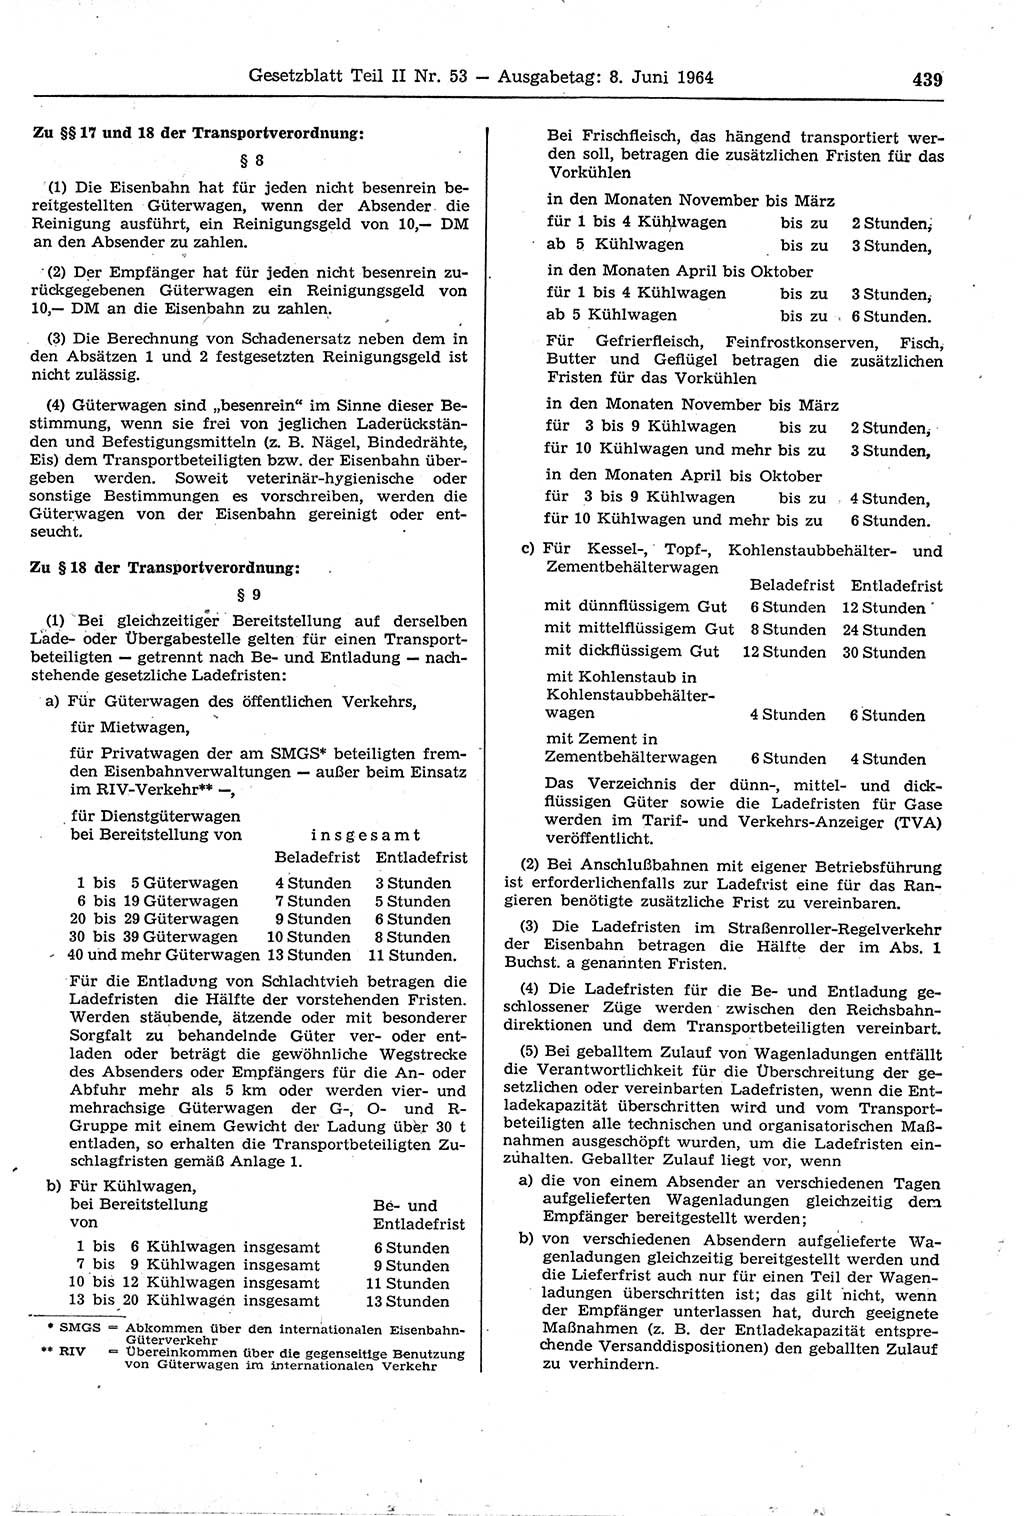 Gesetzblatt (GBl.) der Deutschen Demokratischen Republik (DDR) Teil ⅠⅠ 1964, Seite 439 (GBl. DDR ⅠⅠ 1964, S. 439)